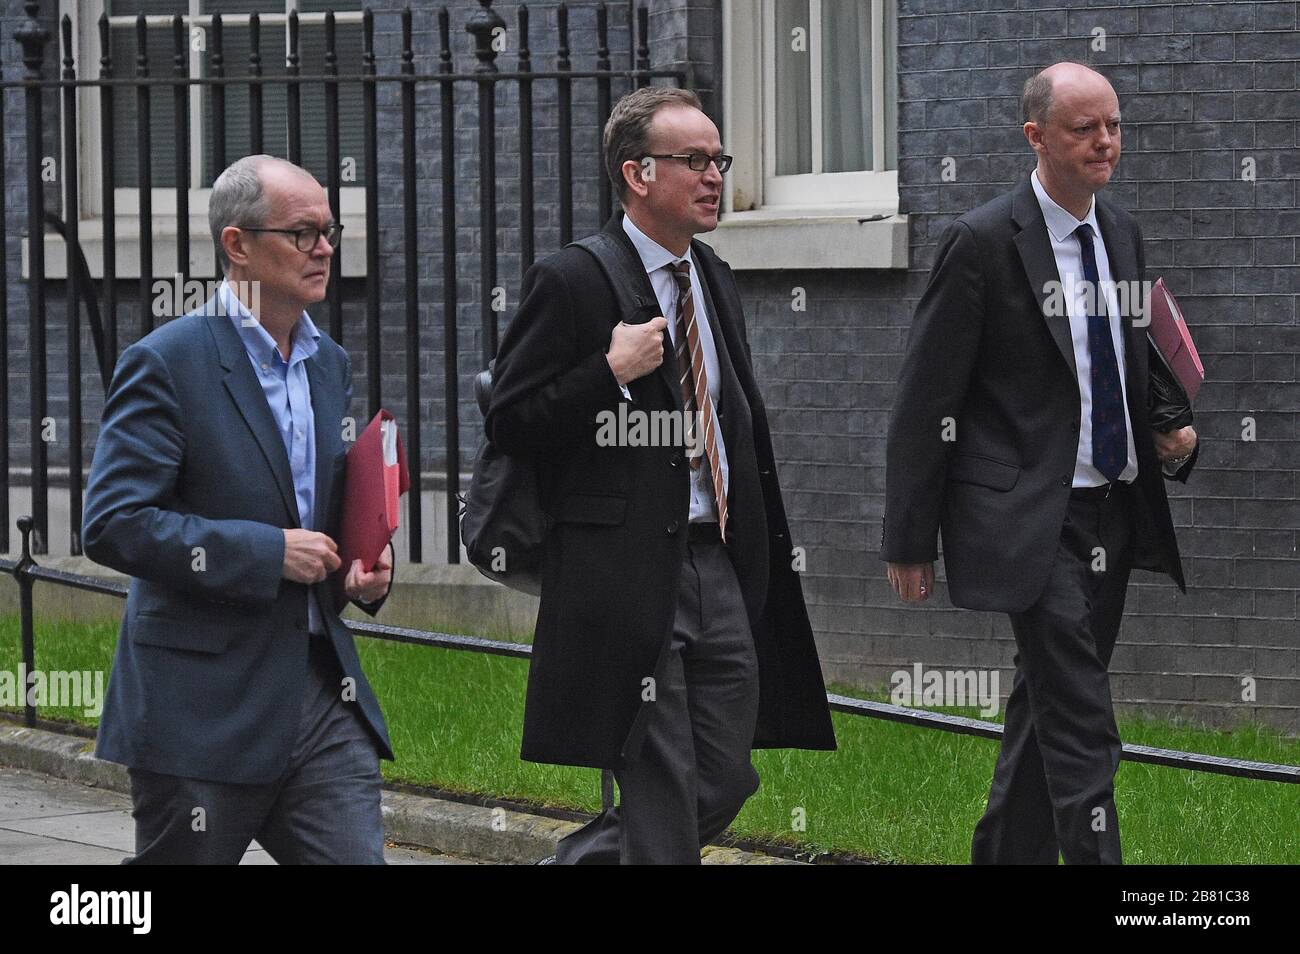 Le conseiller scientifique en chef Sir Patrick Vallance (à gauche) et le directeur médical en chef de l'Angleterre Chris Whitty (à droite) quittent la 10 Downing Street, à Londres, car le gouvernement devrait publier un projet de loi sur les pouvoirs de coronavirus d'urgence. Banque D'Images